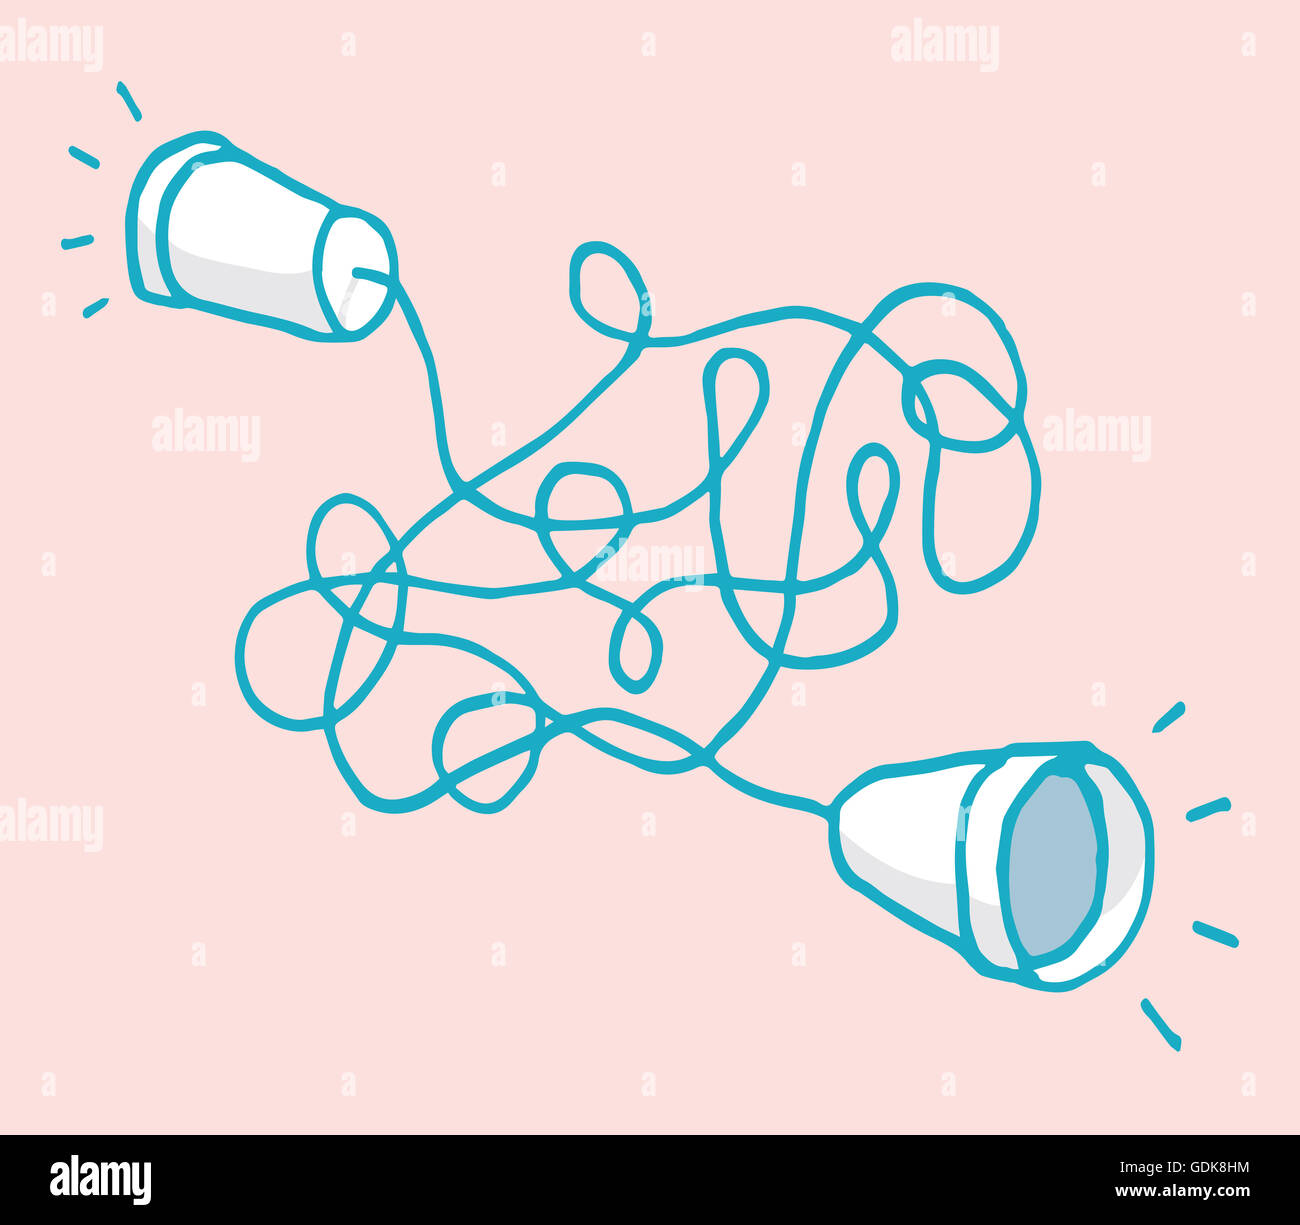 Cartoon-Illustration von zwei Tassen, verbunden durch eine chaotische Zeichenfolge für komplexe Kommunikation Stockfoto